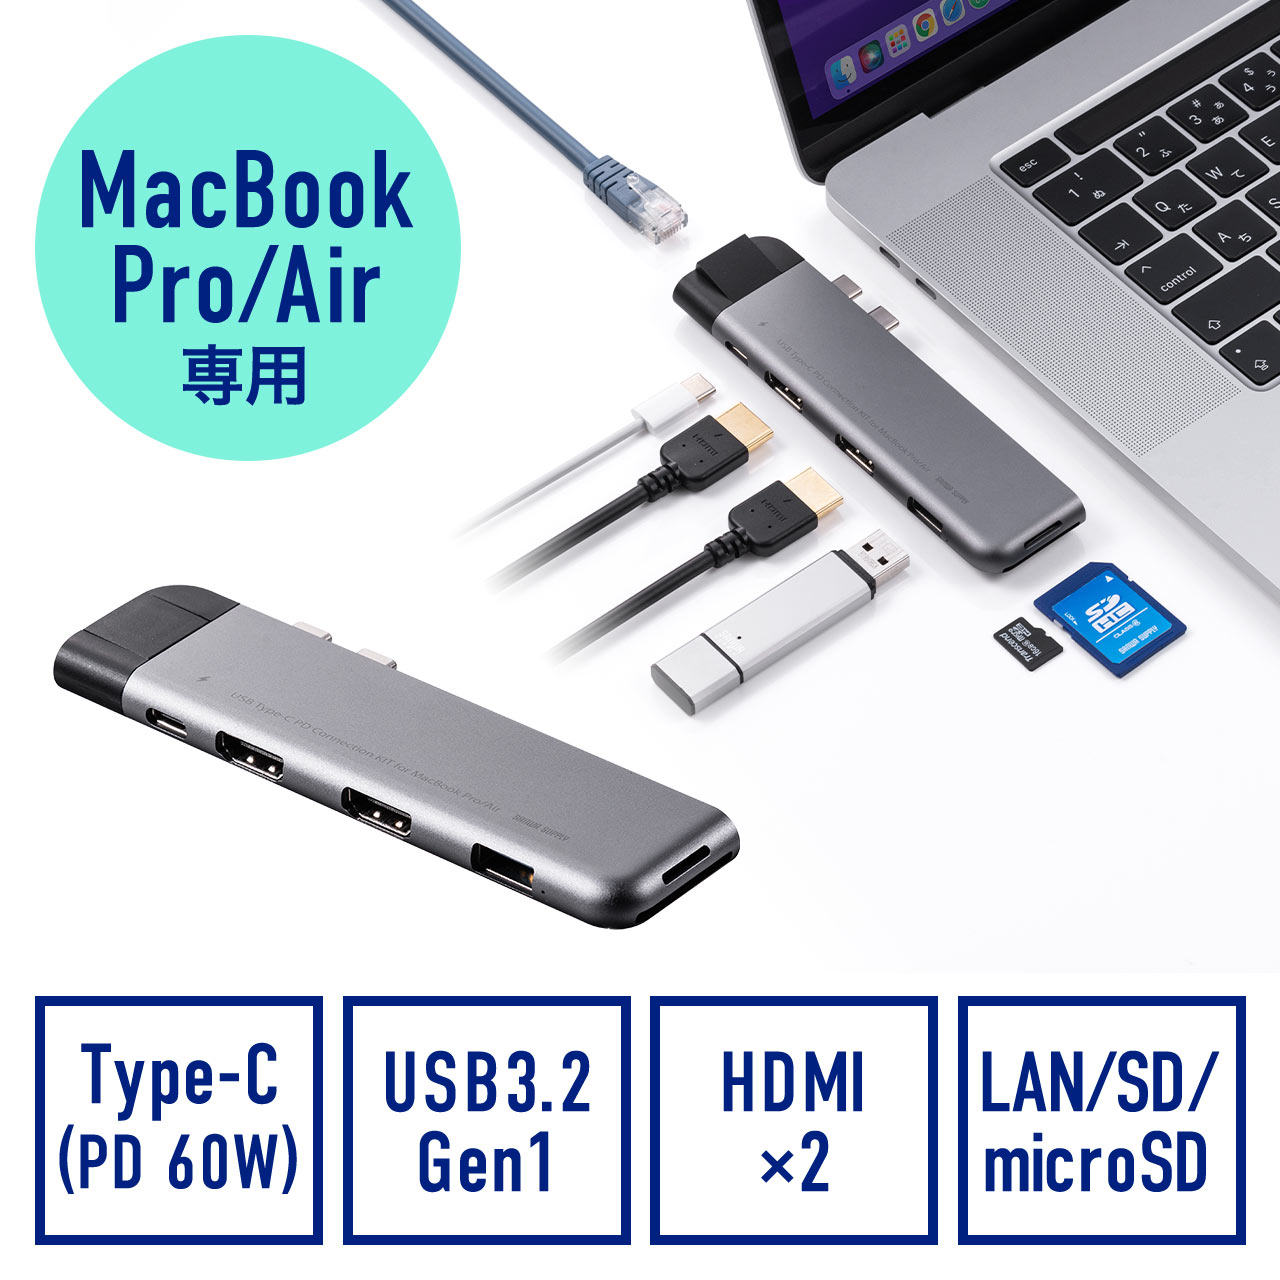 MacBook Pro/Air蟆ら畑繝峨ャ繧ｭ繝ｳ繧ｰ繧ｹ繝�繝ｼ繧ｷ繝ｧ繝ｳ HDMI USB A USB Type-C LAN謗･邯� PD60W SD/microSD  400-ADR328GPD縺ｮ雋ｩ螢ｲ蝠�蜩� 騾夊ｲｩ縺ｪ繧峨し繝ｳ繝ｯ繝�繧､繝ｬ繧ｯ繝�